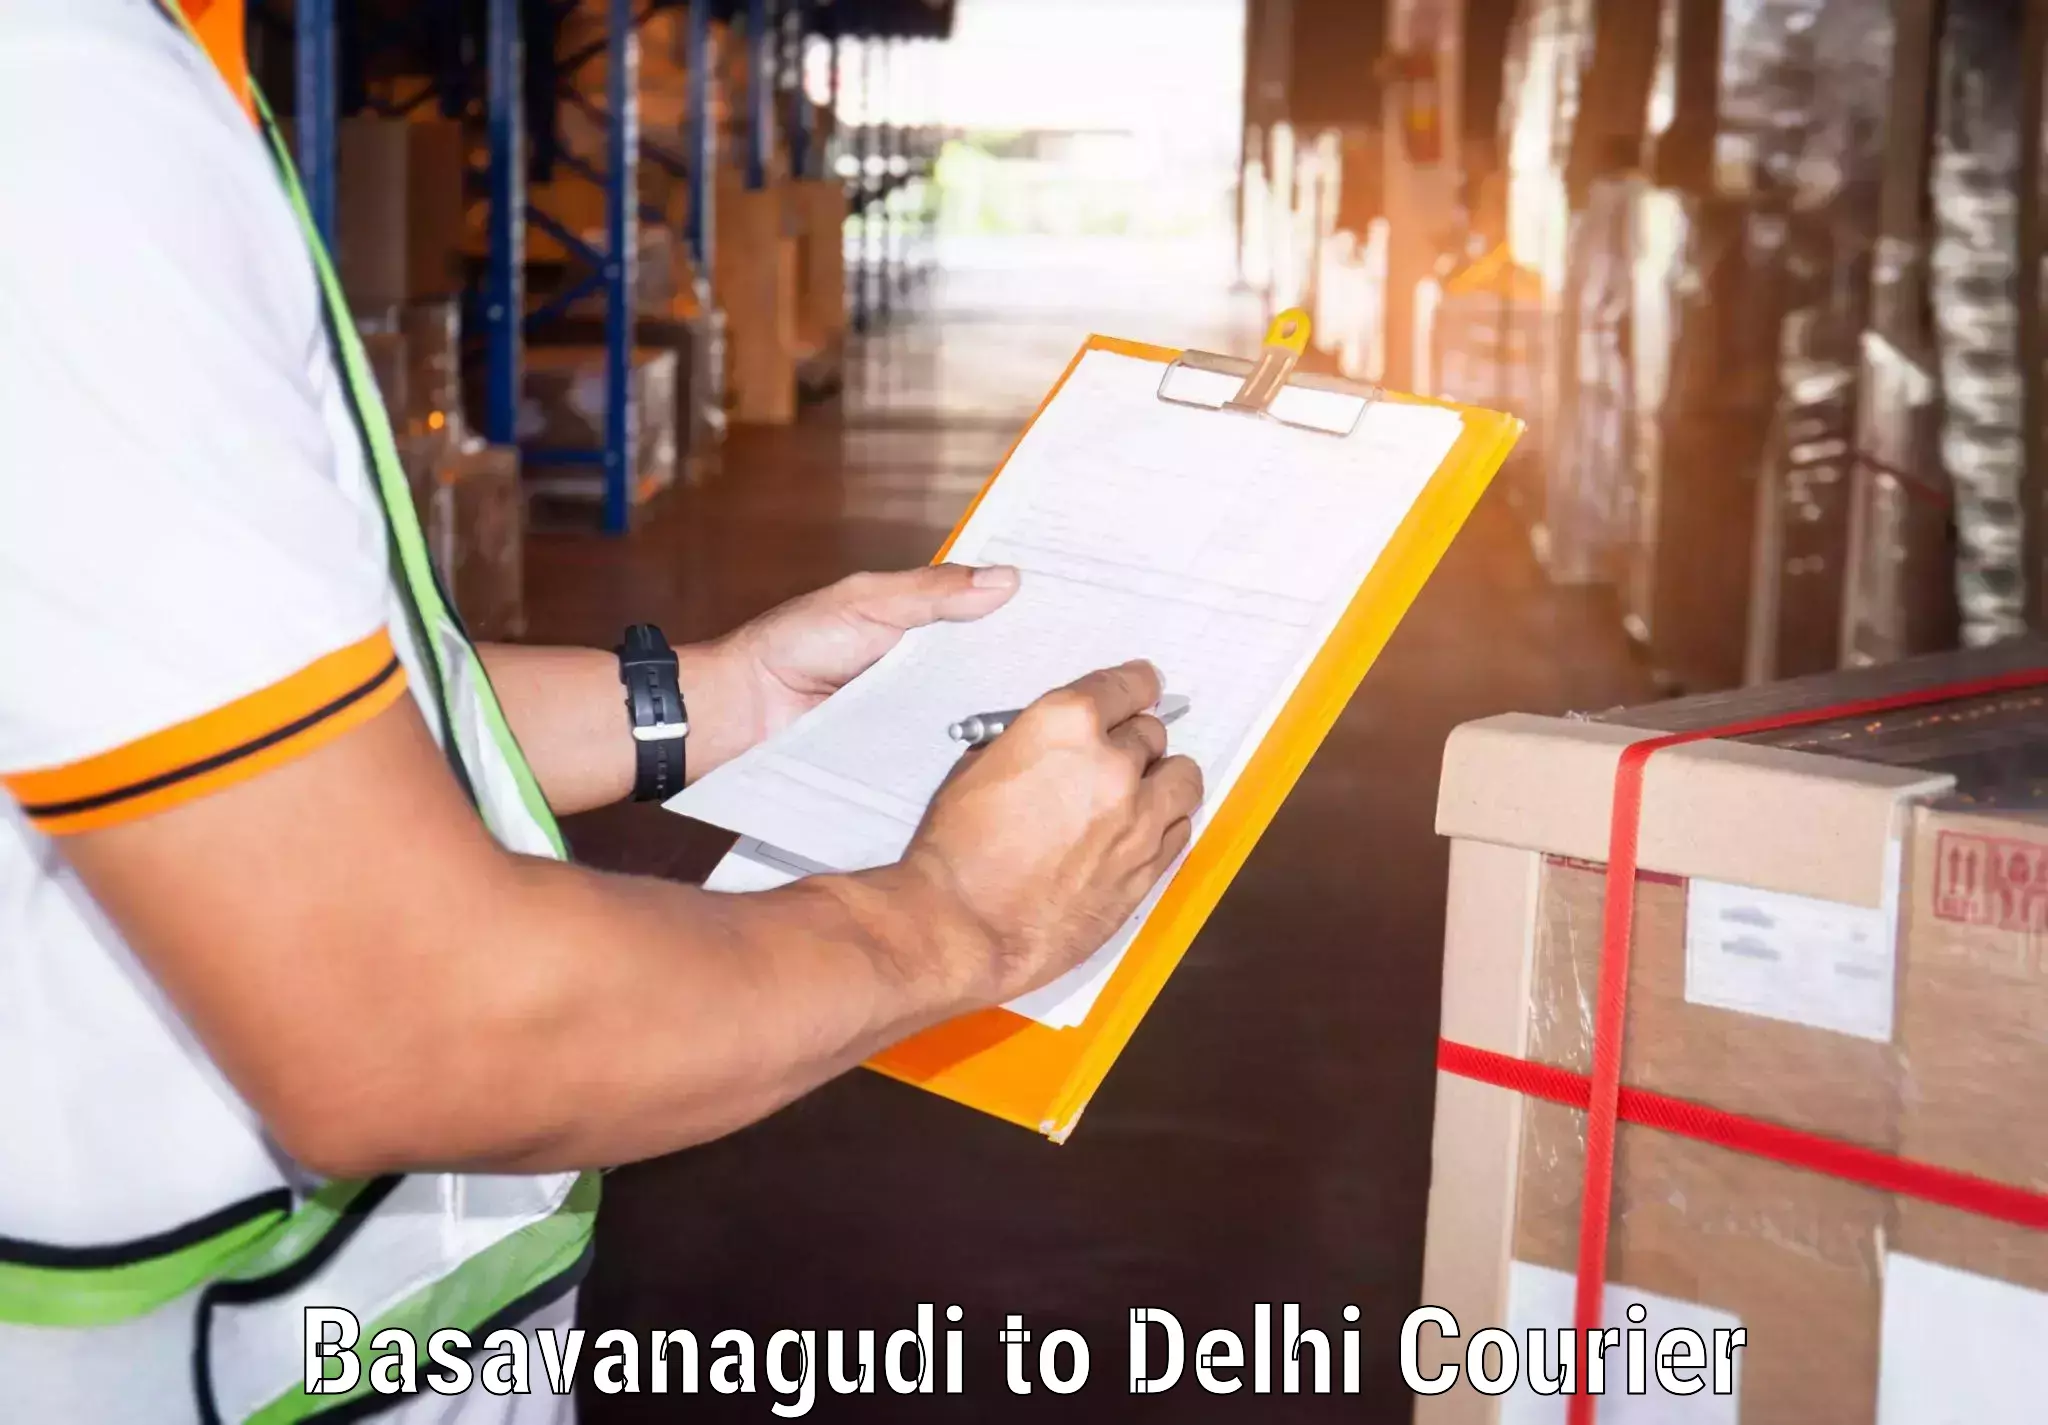 Secure freight services Basavanagudi to Jamia Millia Islamia New Delhi